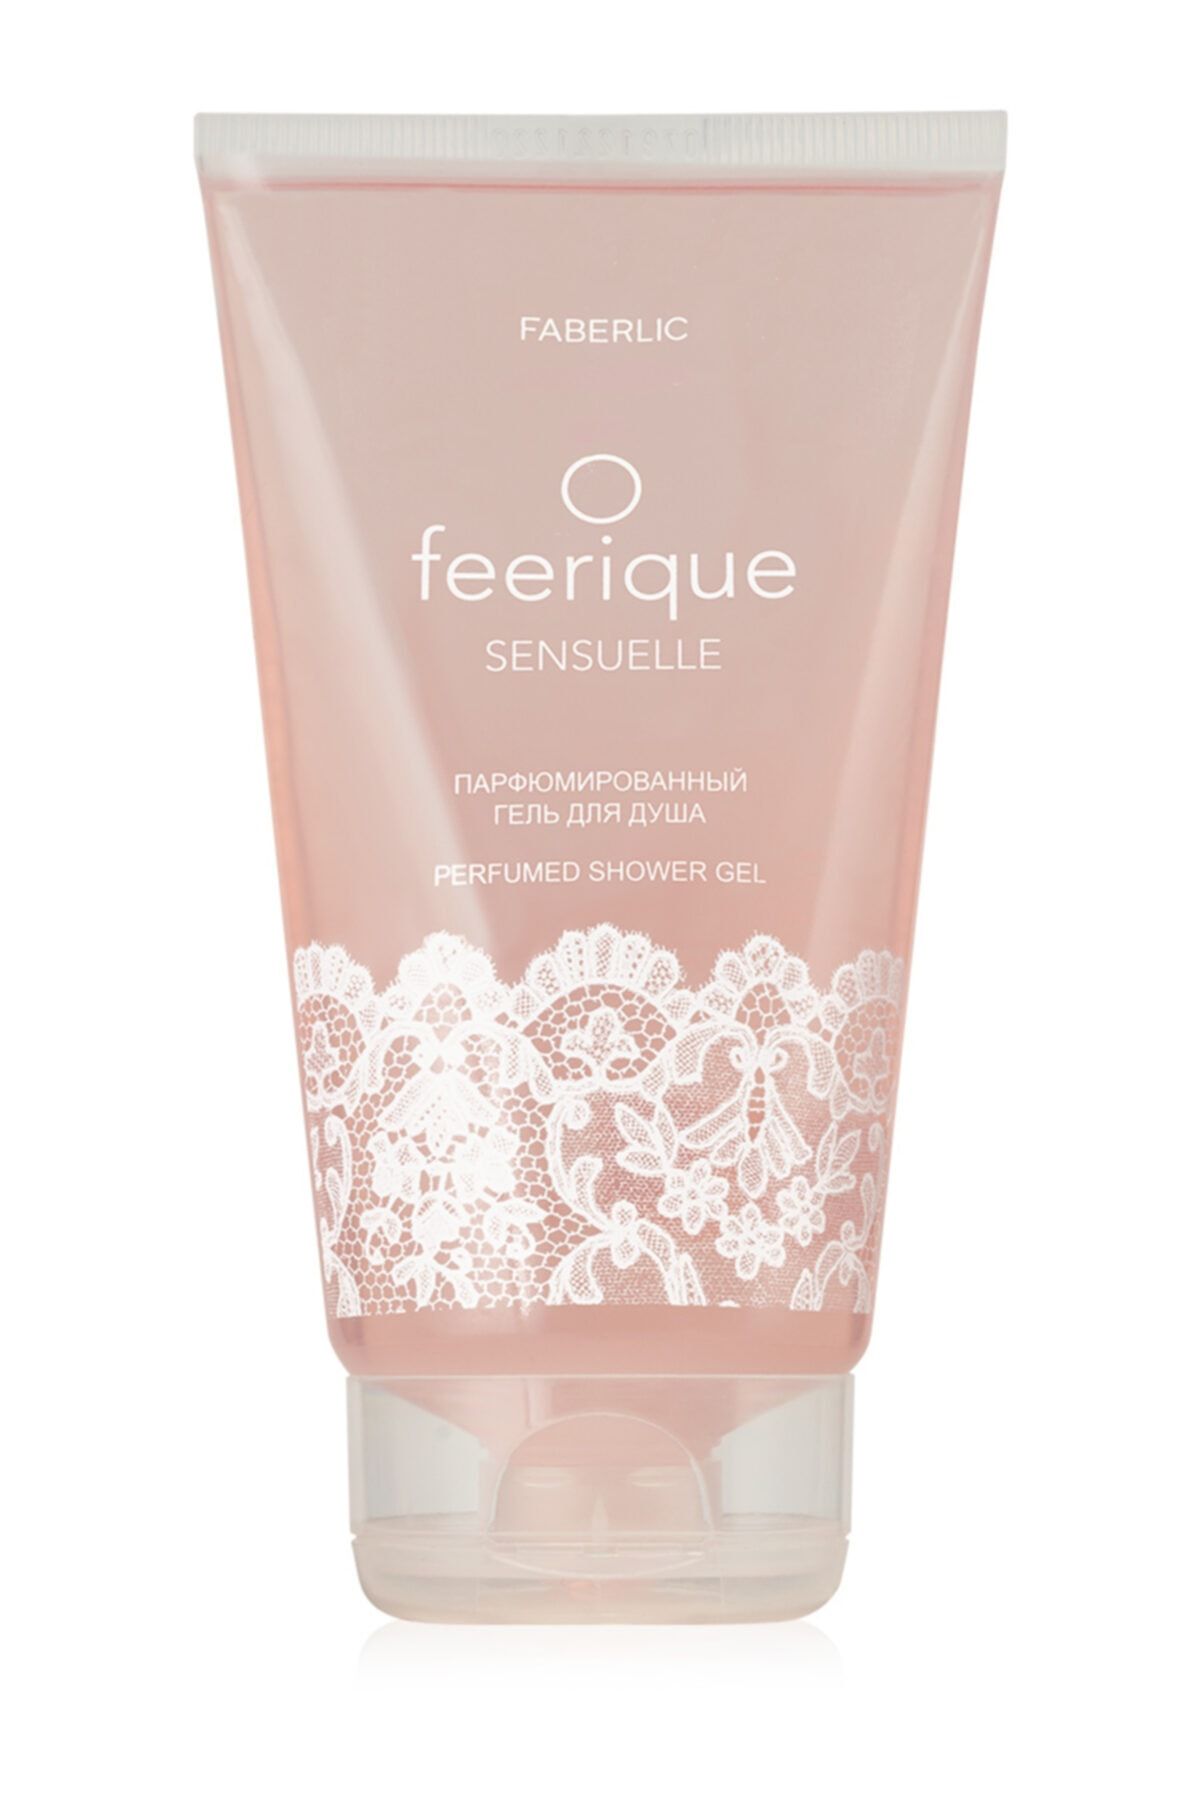 Faberlic O'feerıque Sensuelle Kadın Parfümlü Duş Jeli